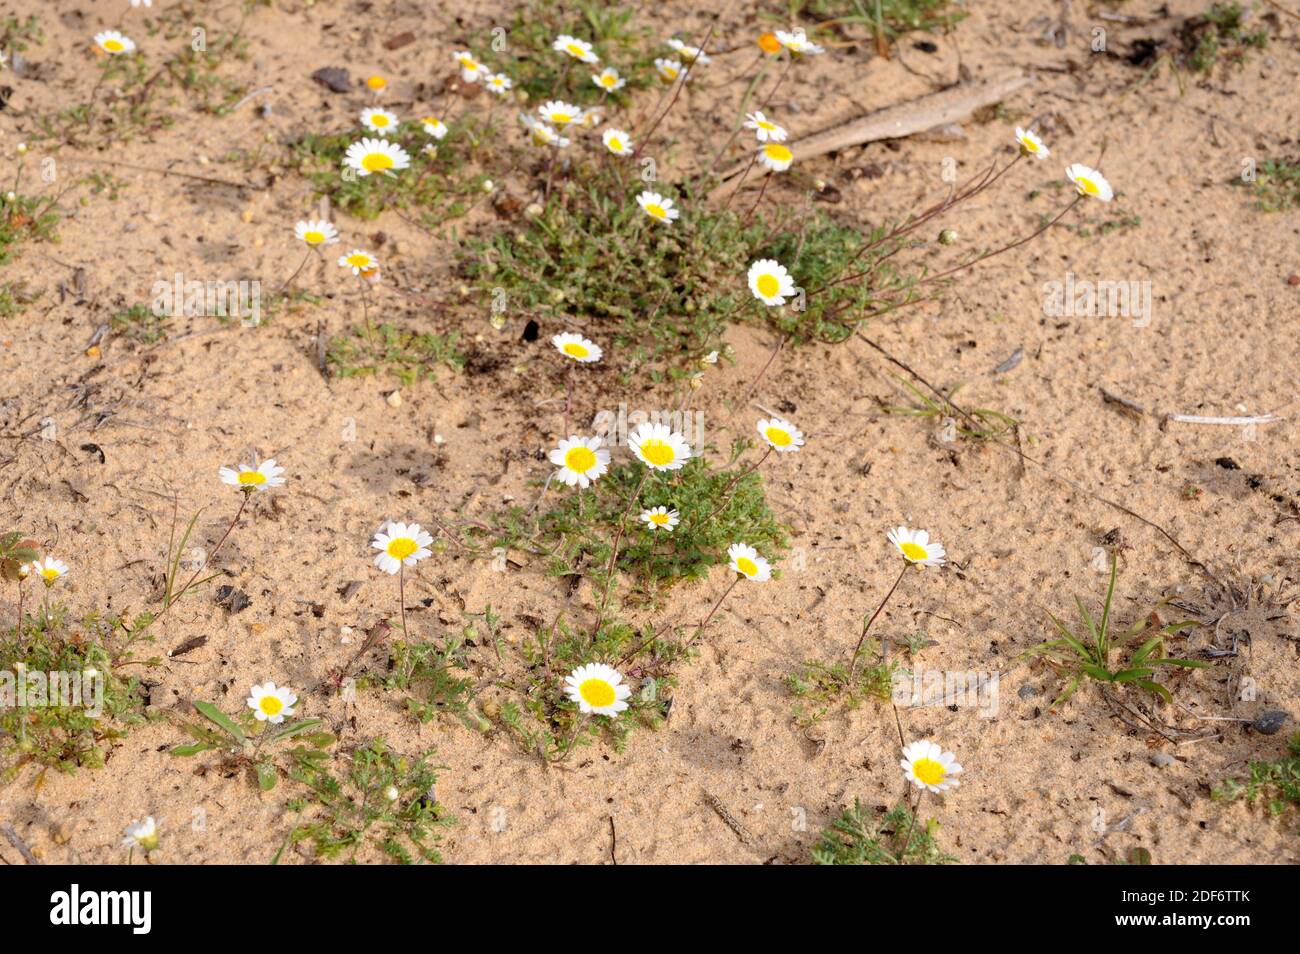 Hymenostemma pseudoanthemis est une plante annuelle endémique à l'Andalousie (provinces de Cadix et Malaga). Est une espèce protégée incluse dans le rouge de la flore espagnole Banque D'Images